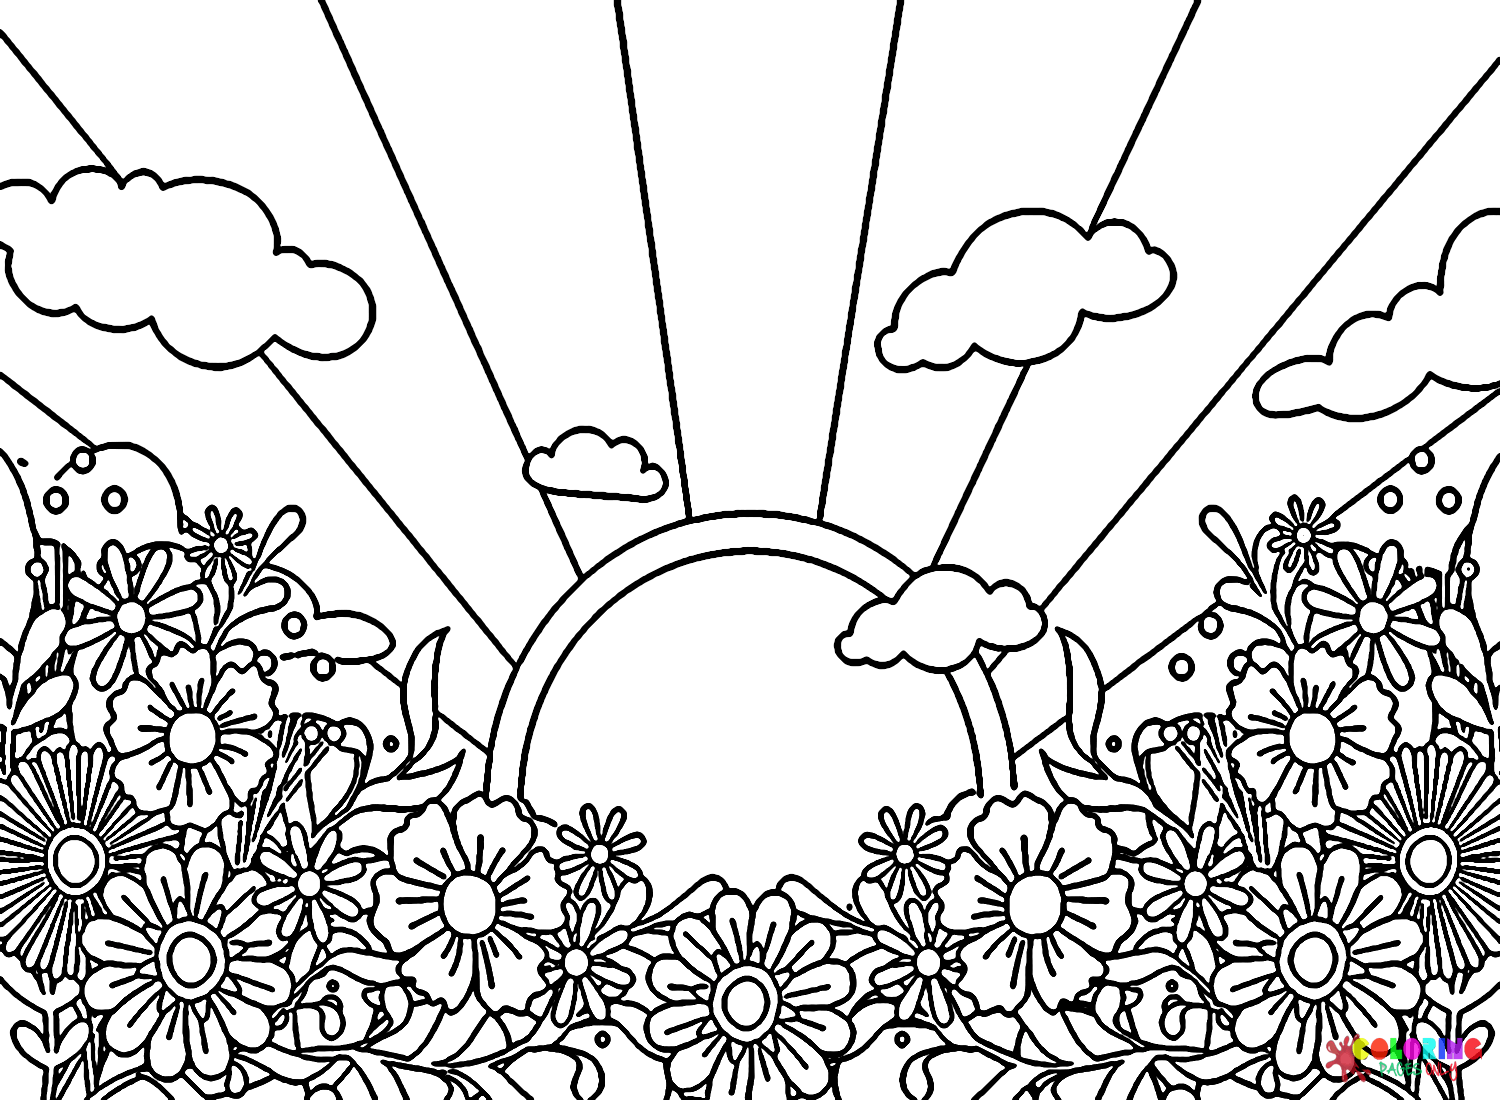 Хиппи Солнце с цветами от Хиппи